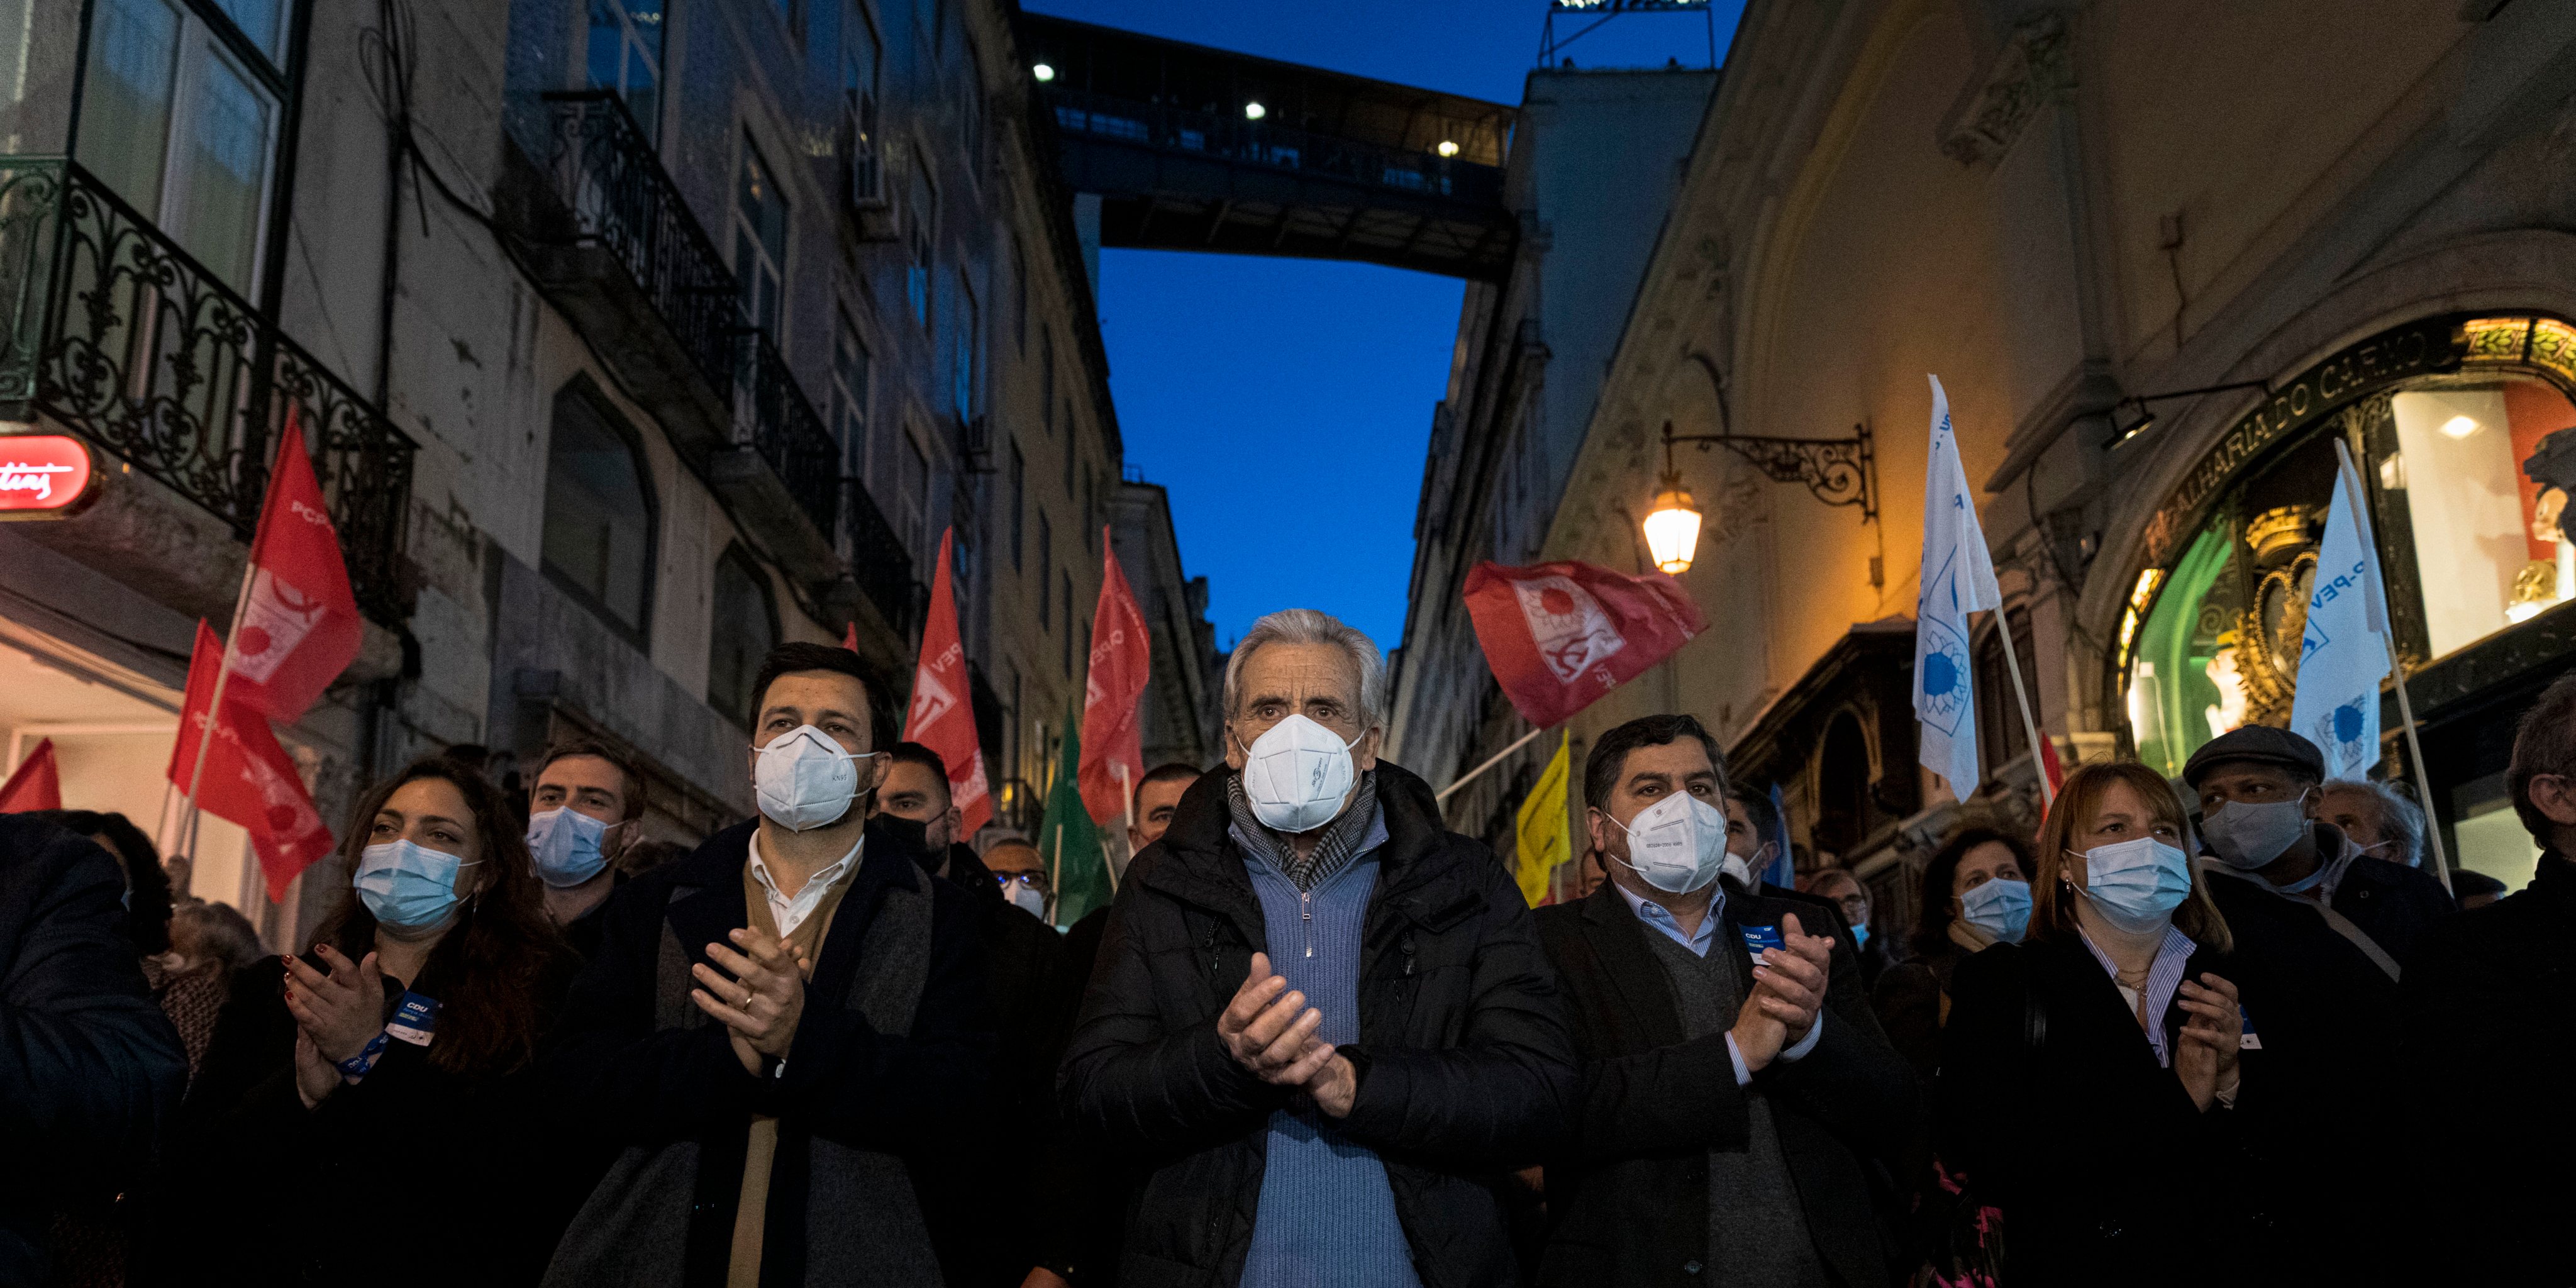 Jerónimo de Sousa na arruada no Chiado, em Lisboa, na quinta-feira penúltimo dia de campanha